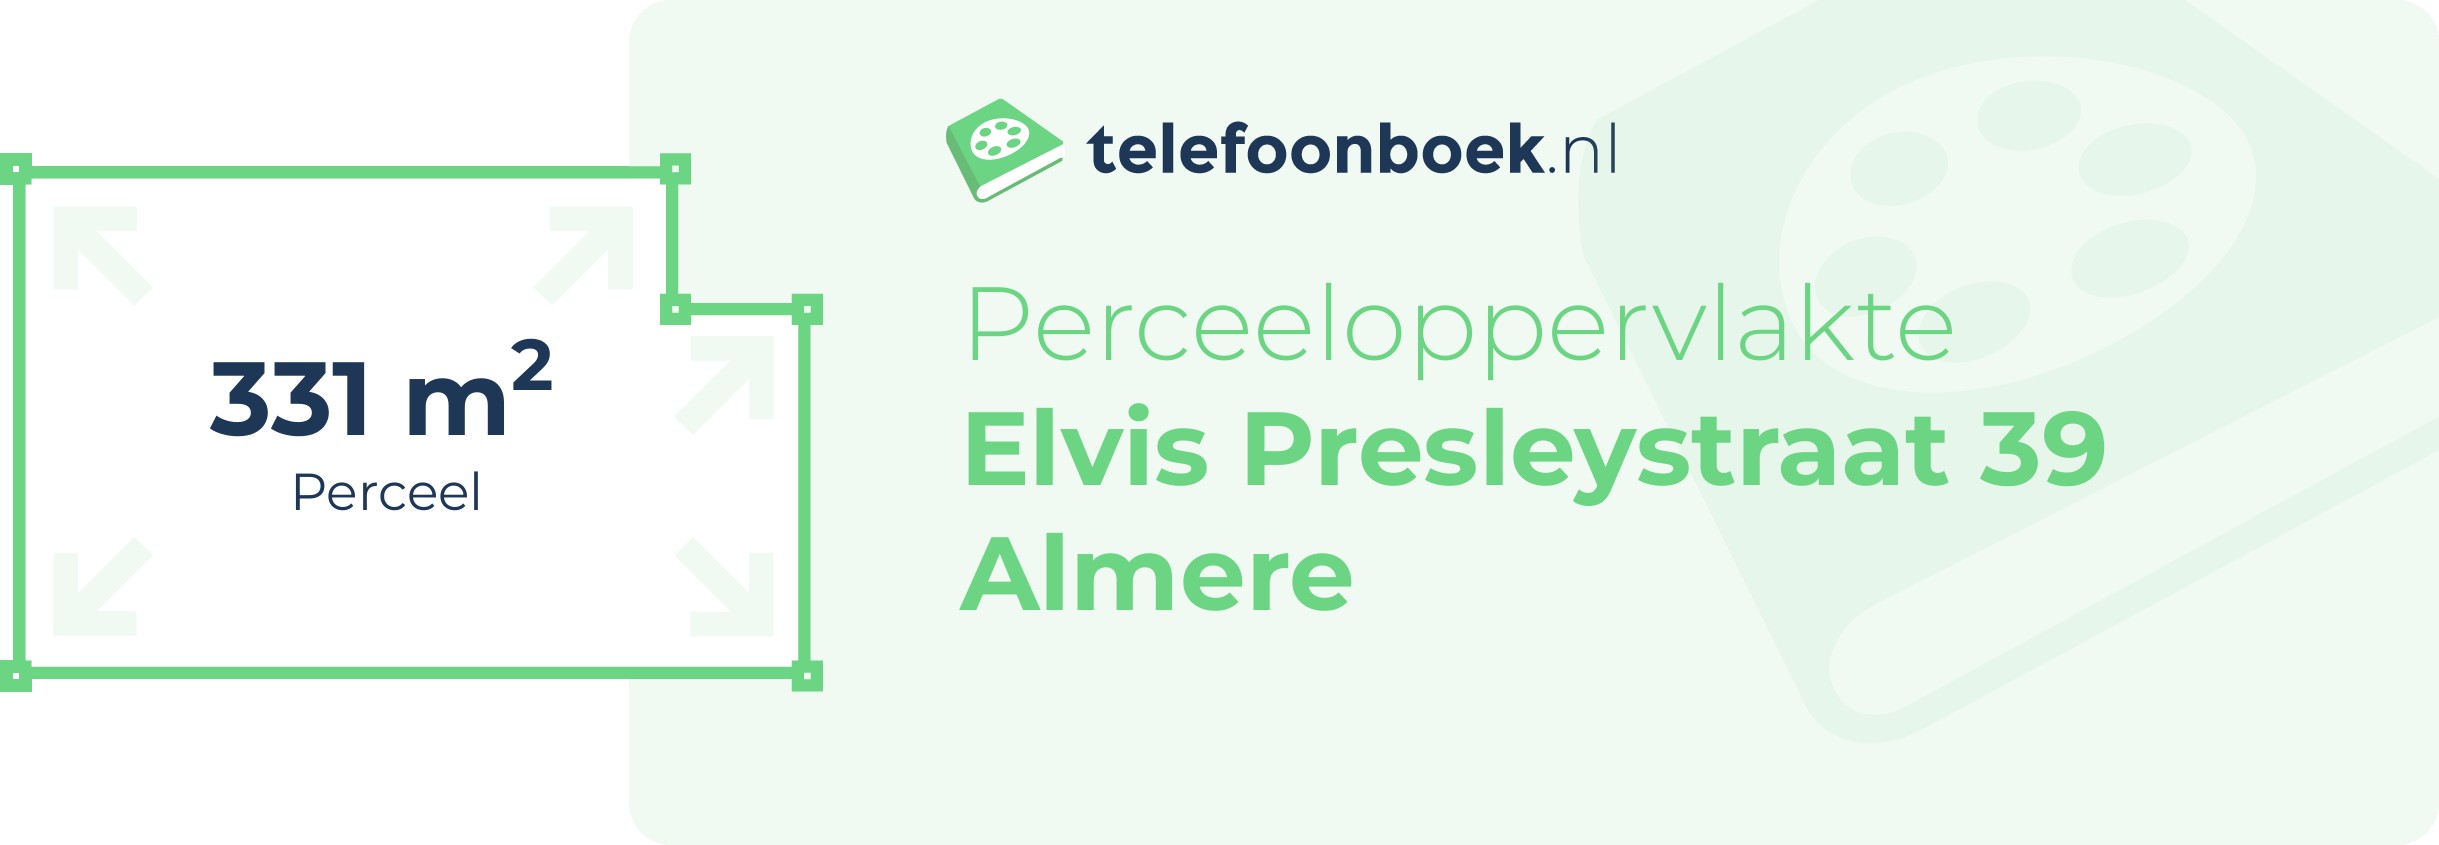 Perceeloppervlakte Elvis Presleystraat 39 Almere